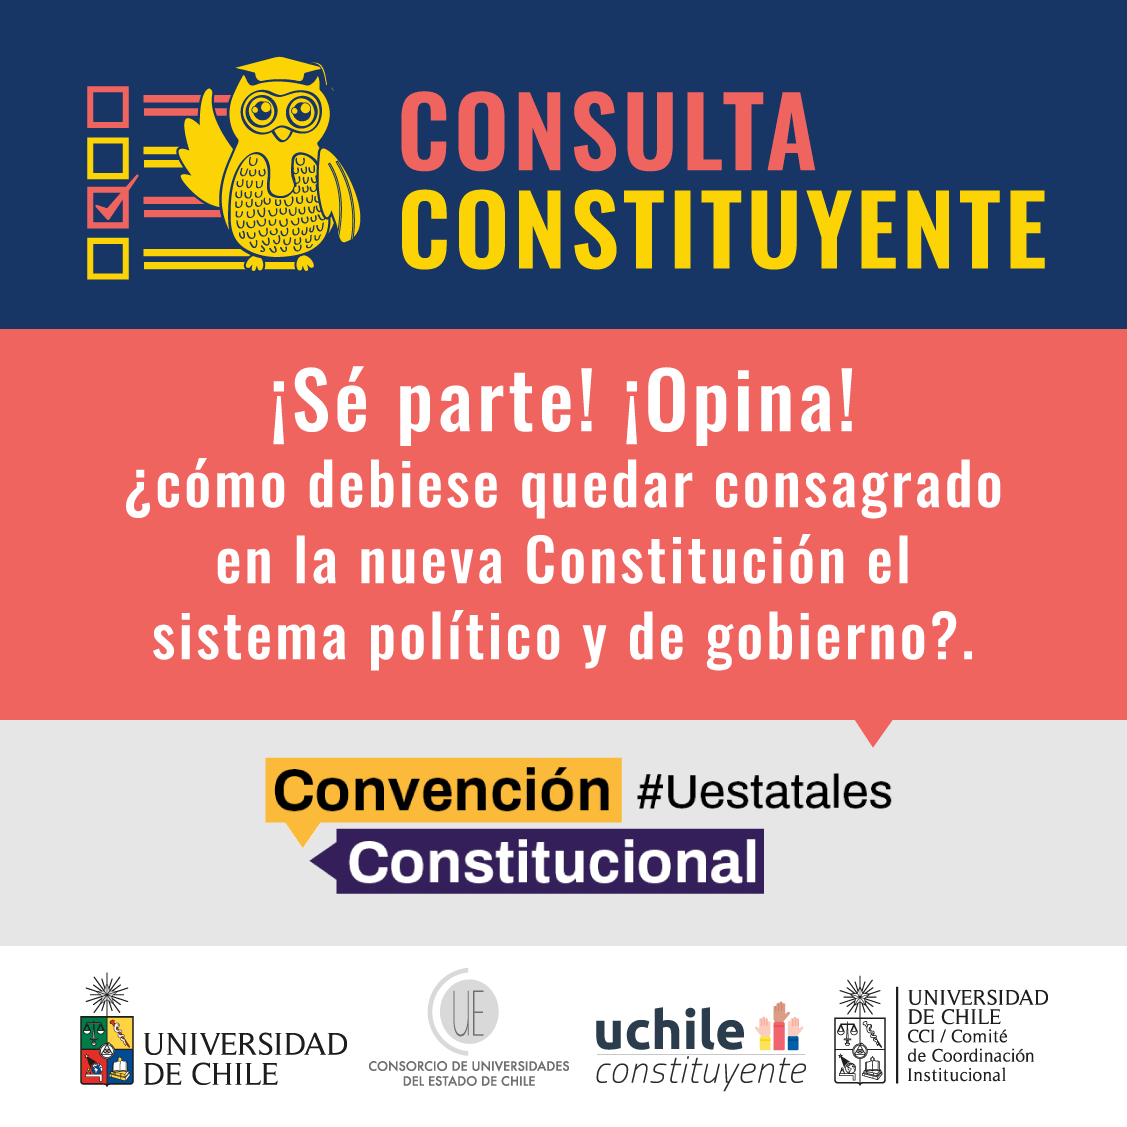 U. de Chile lanza consulta sobre qué tipo de sistema político debería  consagrar la nueva Constitución – UCHILE Constituyente